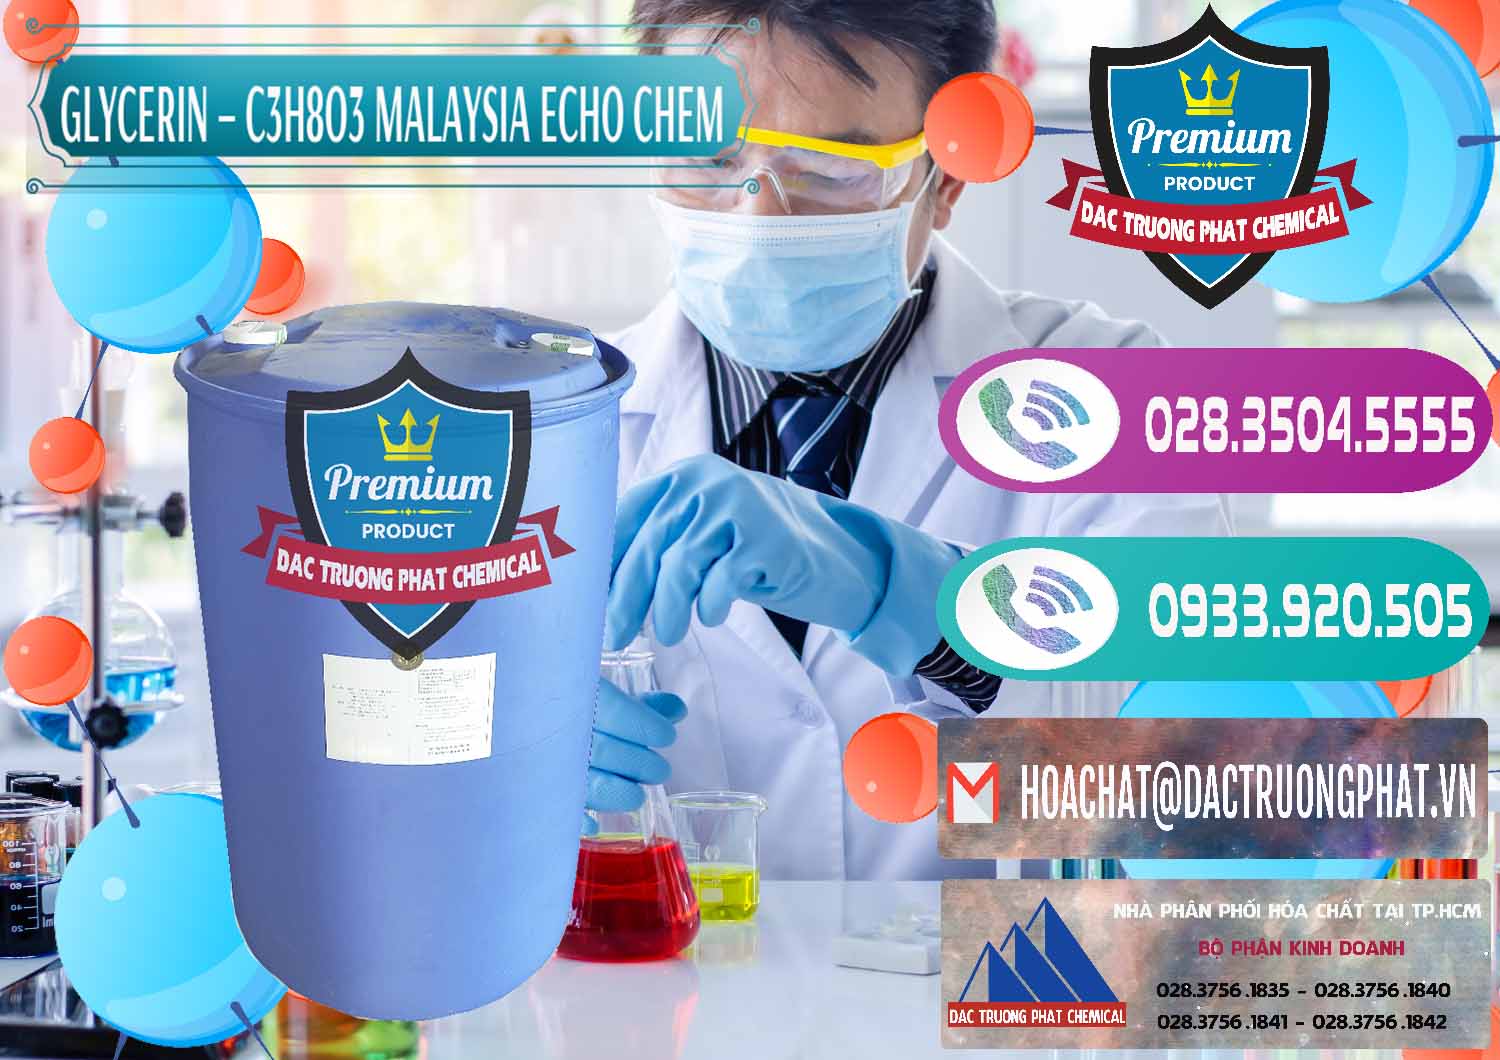 Công ty chuyên cung ứng & bán Glycerin – C3H8O3 99.7% Echo Chem Malaysia - 0273 - Kinh doanh ( cung cấp ) hóa chất tại TP.HCM - hoachatxulynuoc.com